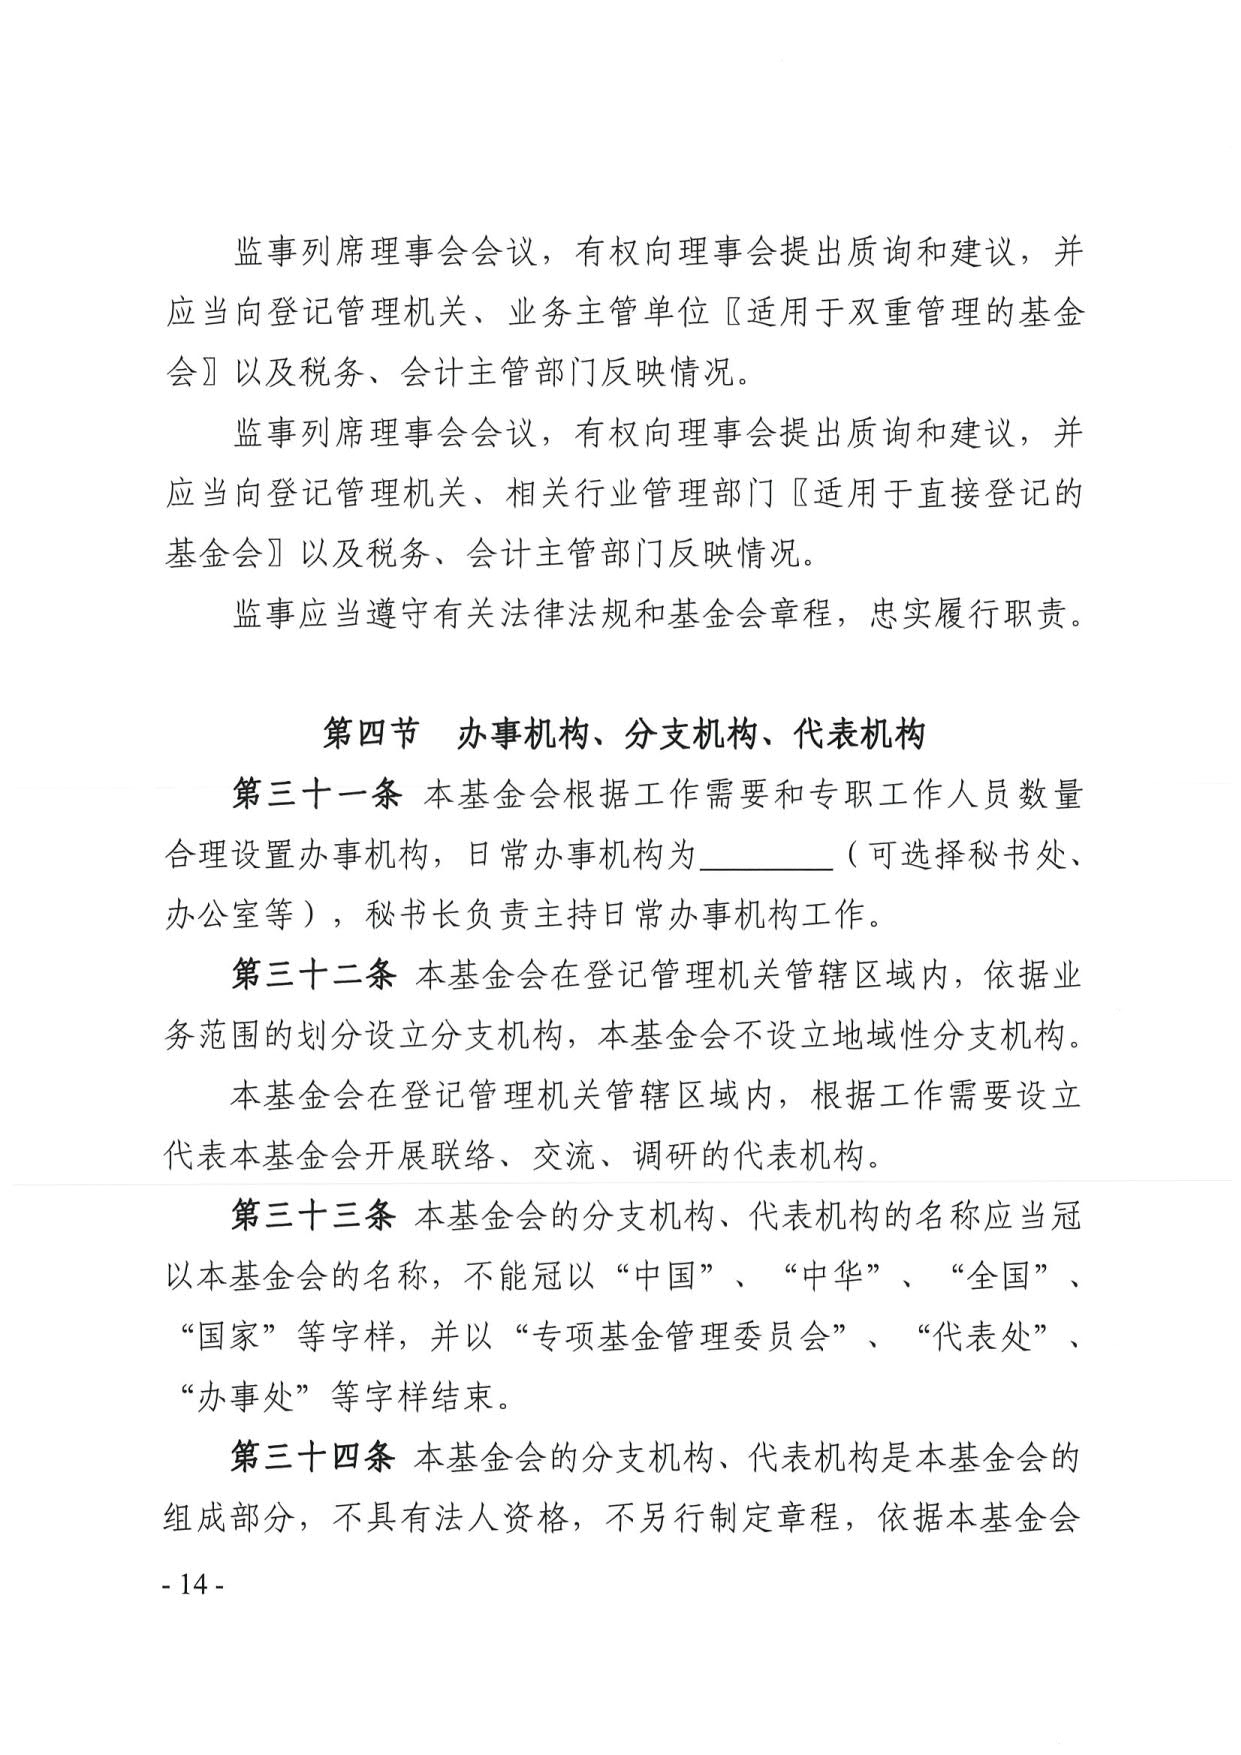 广东省民政厅关于印发《广东省基金会章程示范文本》的通知(4)_14.jpg